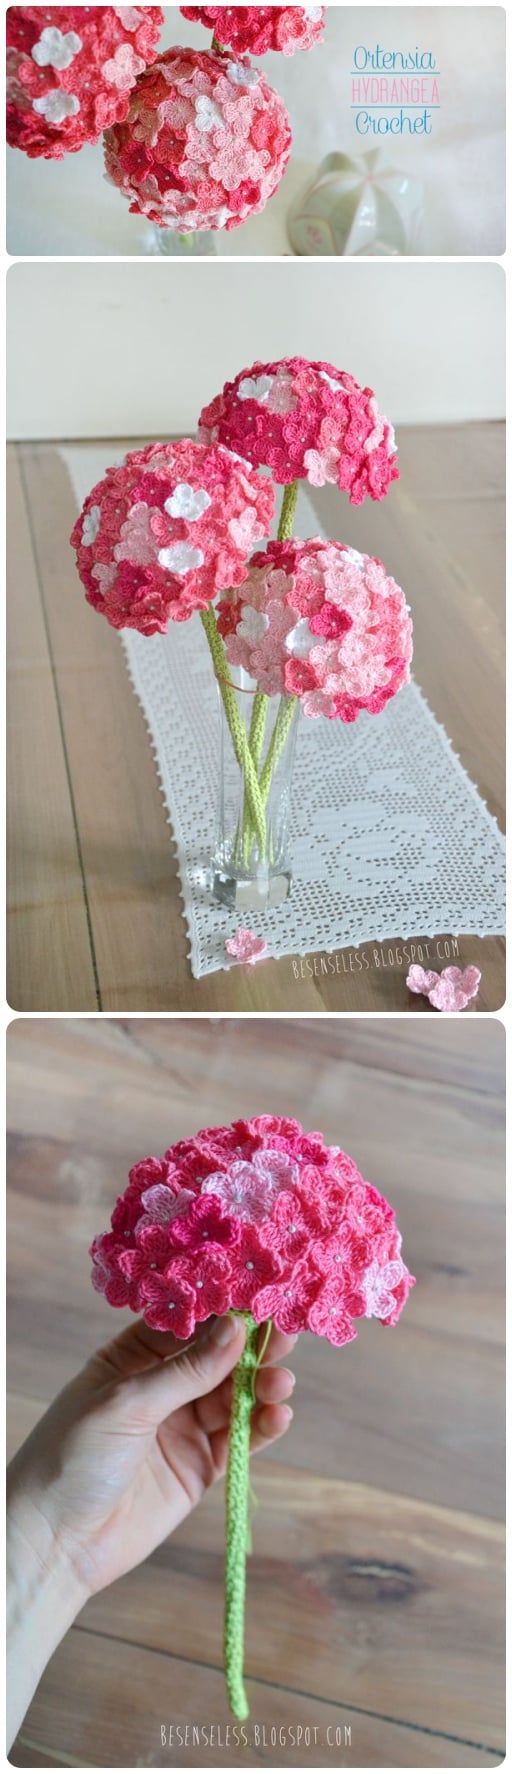 Crochet Hydrangea Flower with Free Pattern